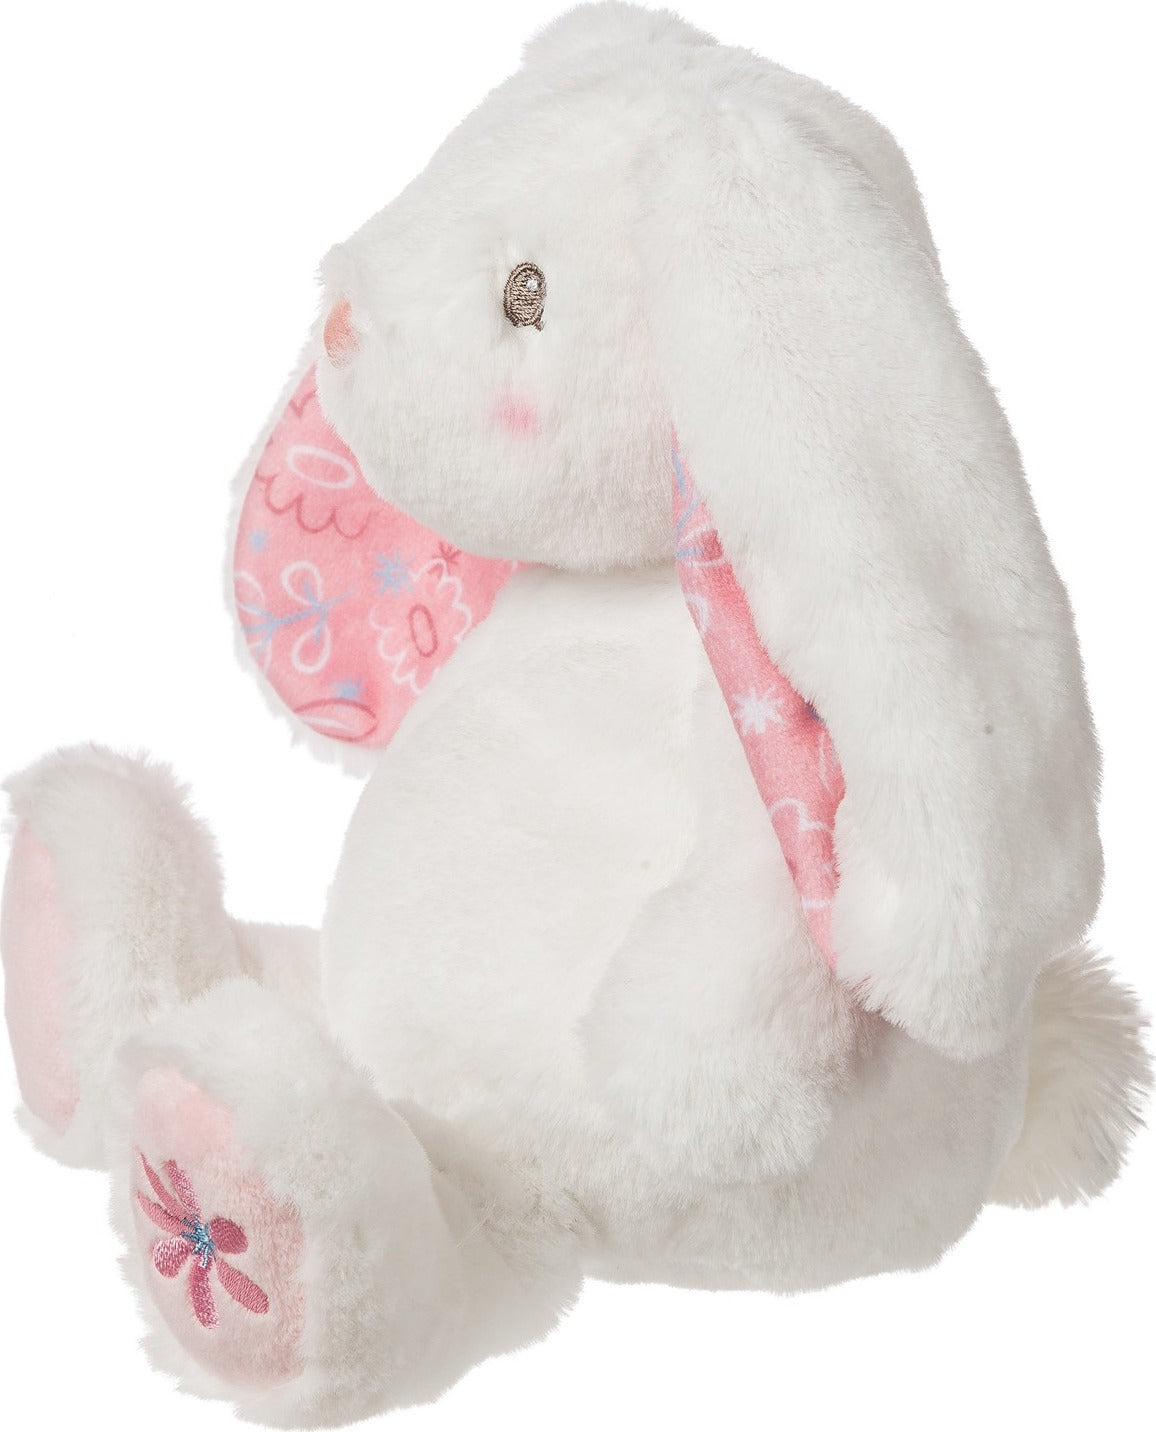 Bella Bunny Soft Toy - 10"